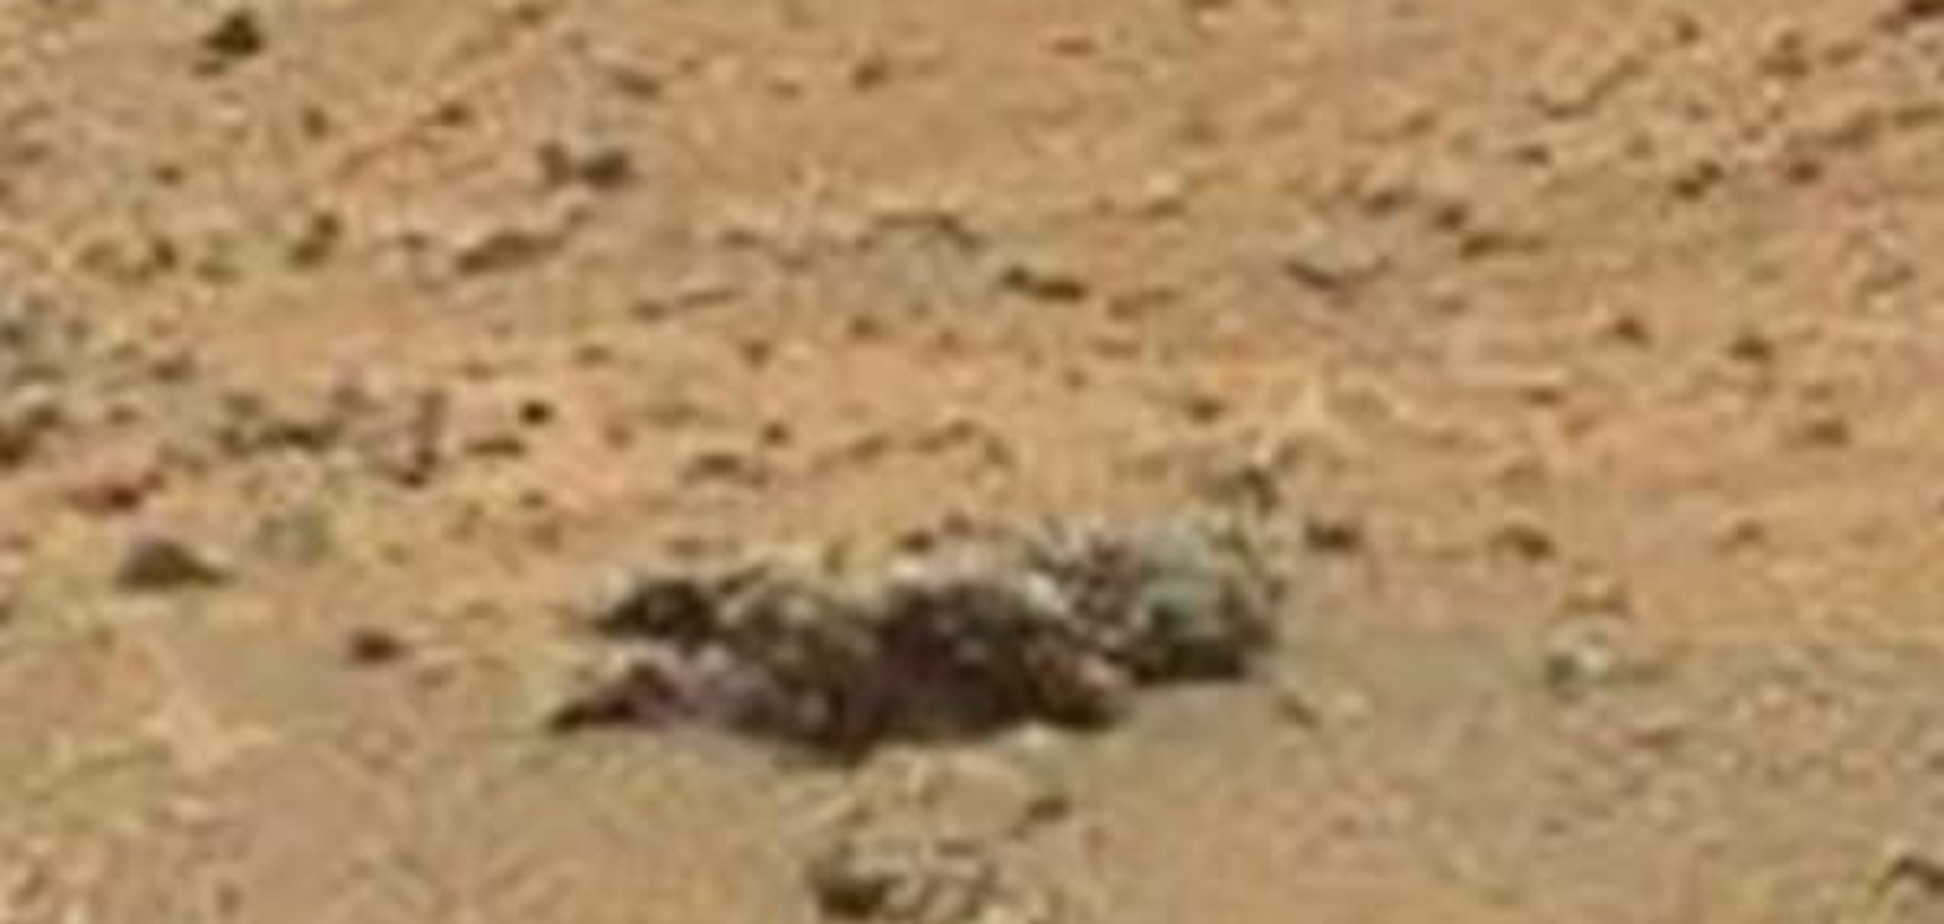 Чи є життя на Марсі? Серед скель Червоної планети побачили труп дитини: відеофакт